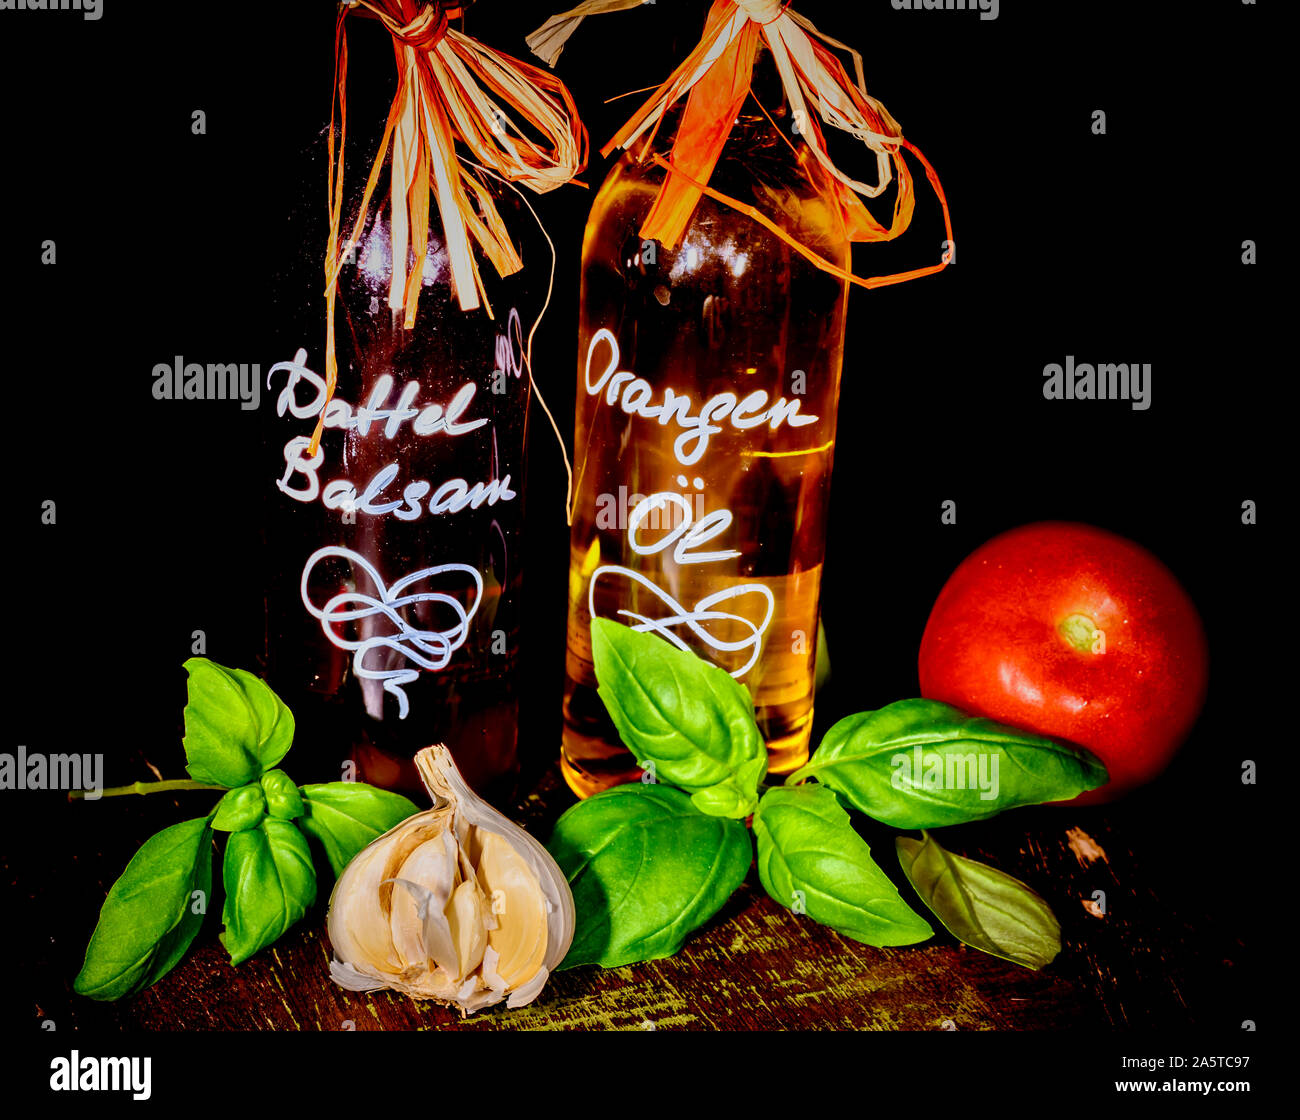 Vinaigre balsamique et huile d'orange Date de concert avec des ingrédients frais comme le basilic, l'ail et la tomate. Banque D'Images